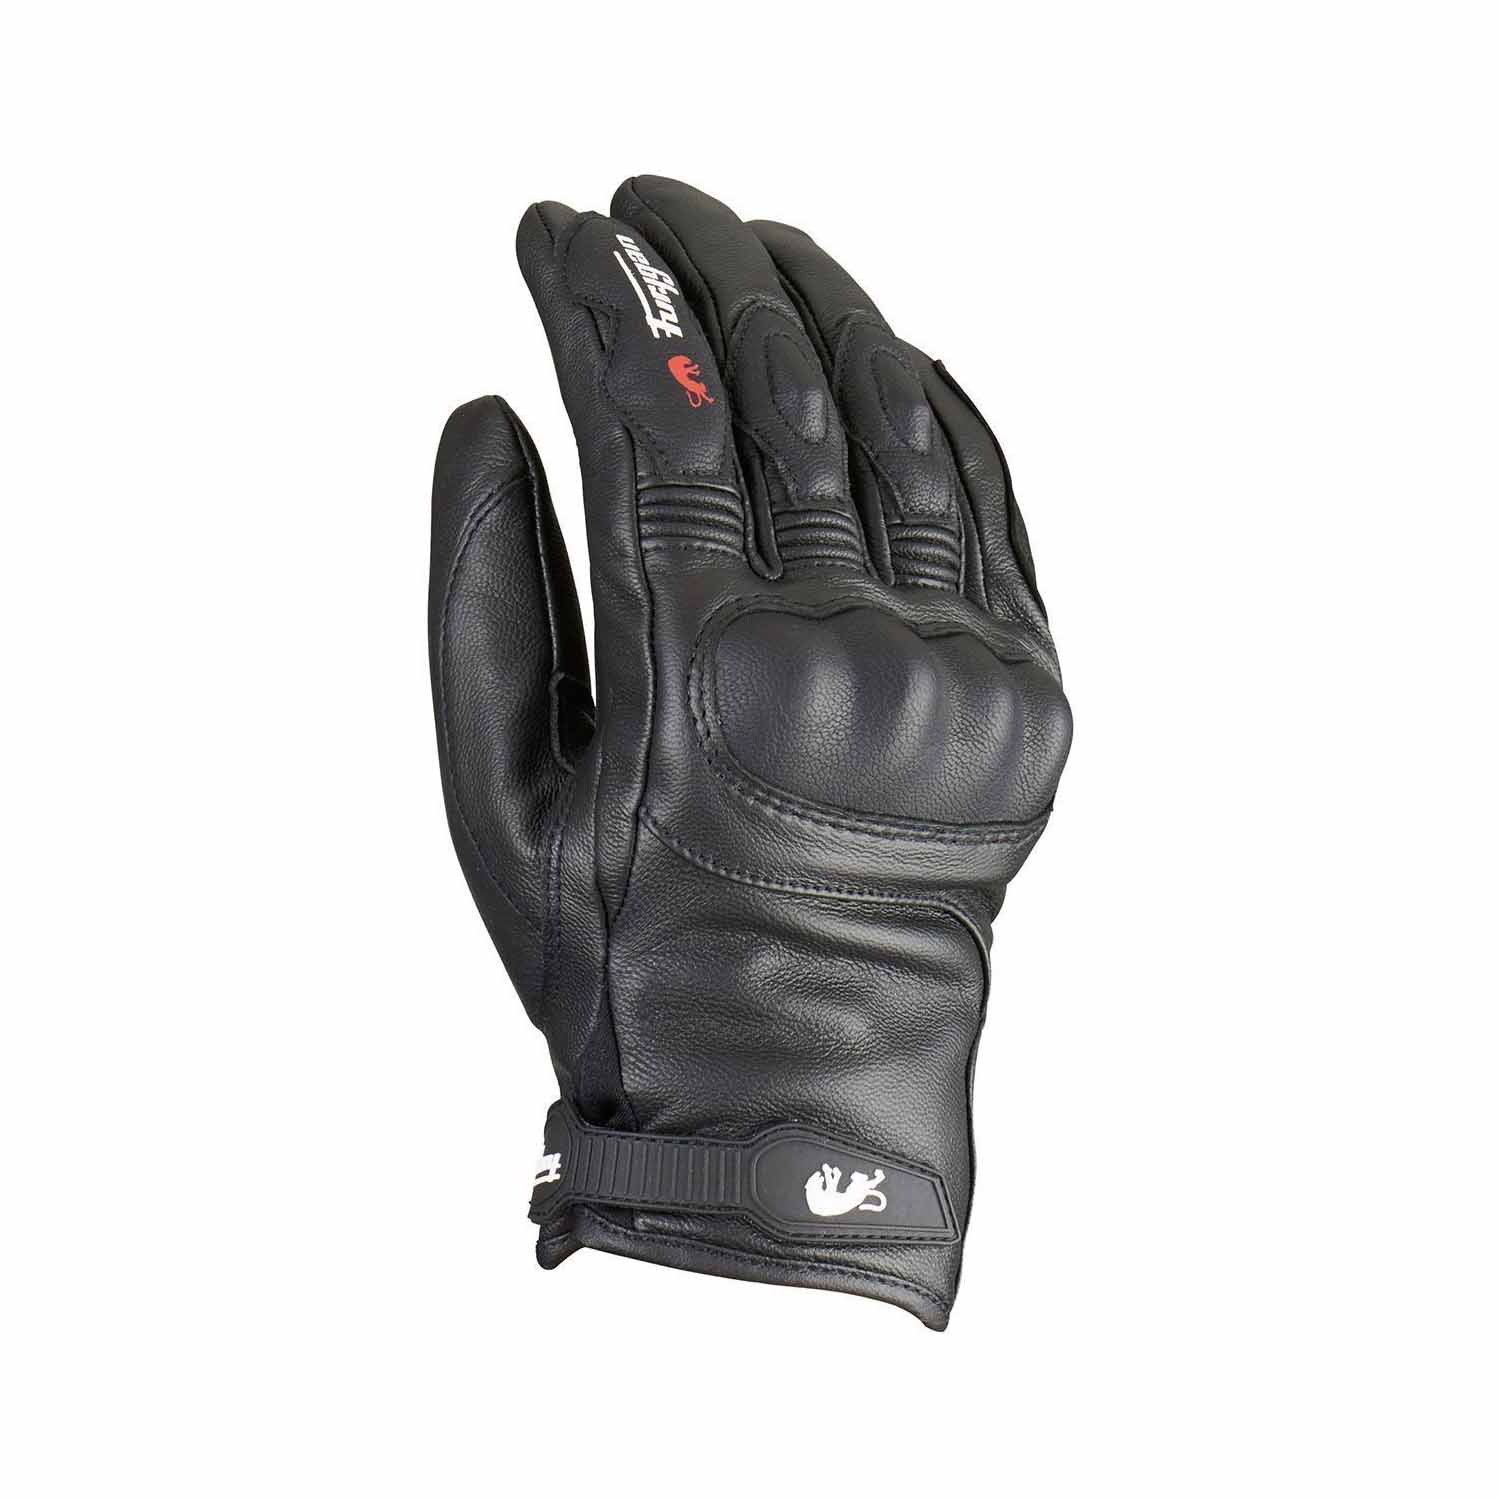 Image of Furygan Gloves TD21 All Season Evo Black Size 3XL ID 3435980328528